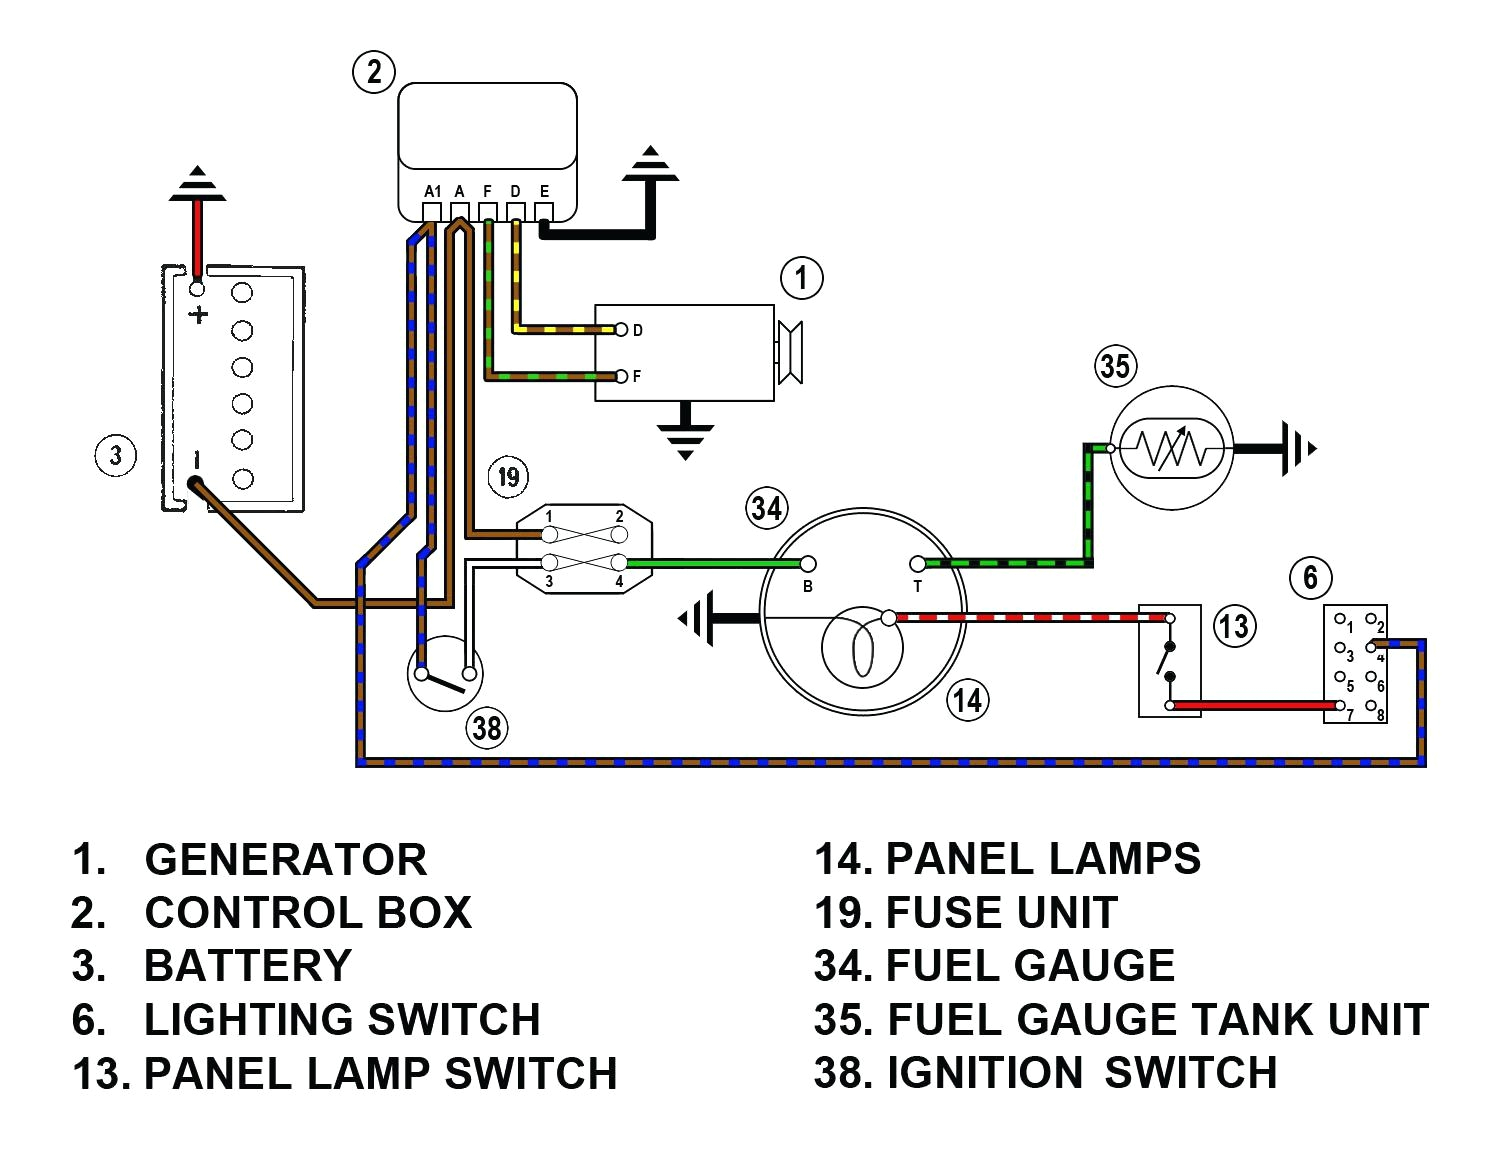 emg 89 wiring diagram wiring diagram technic emg 89 81 21 wiring diagram